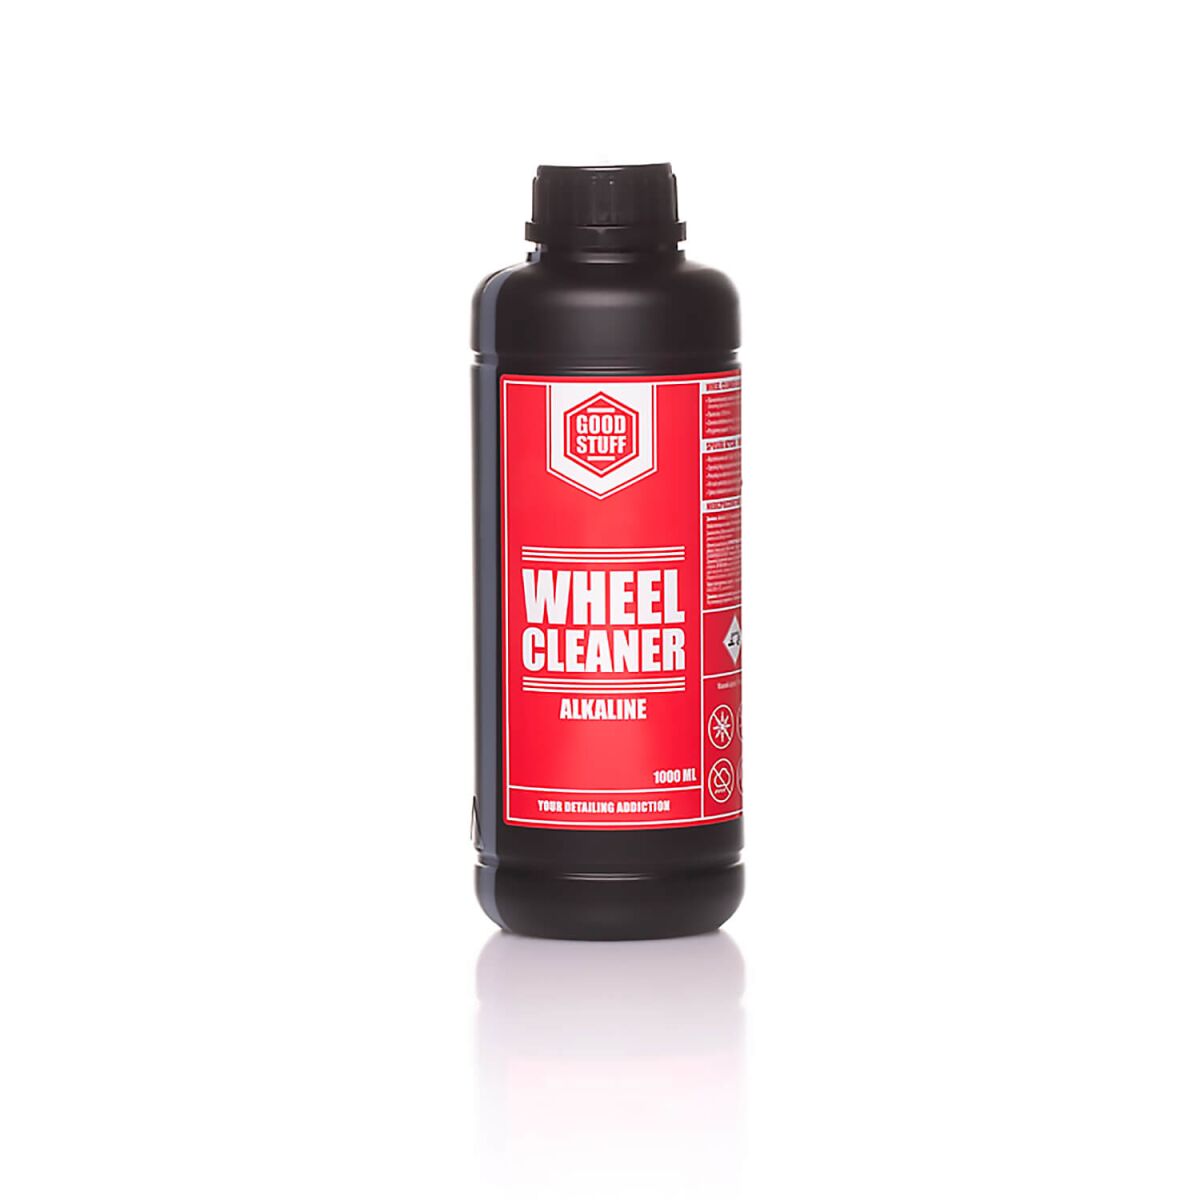 Good Stuff Wheel Cleaner Alkaline Felgenreiniger 1L, 13,90 €